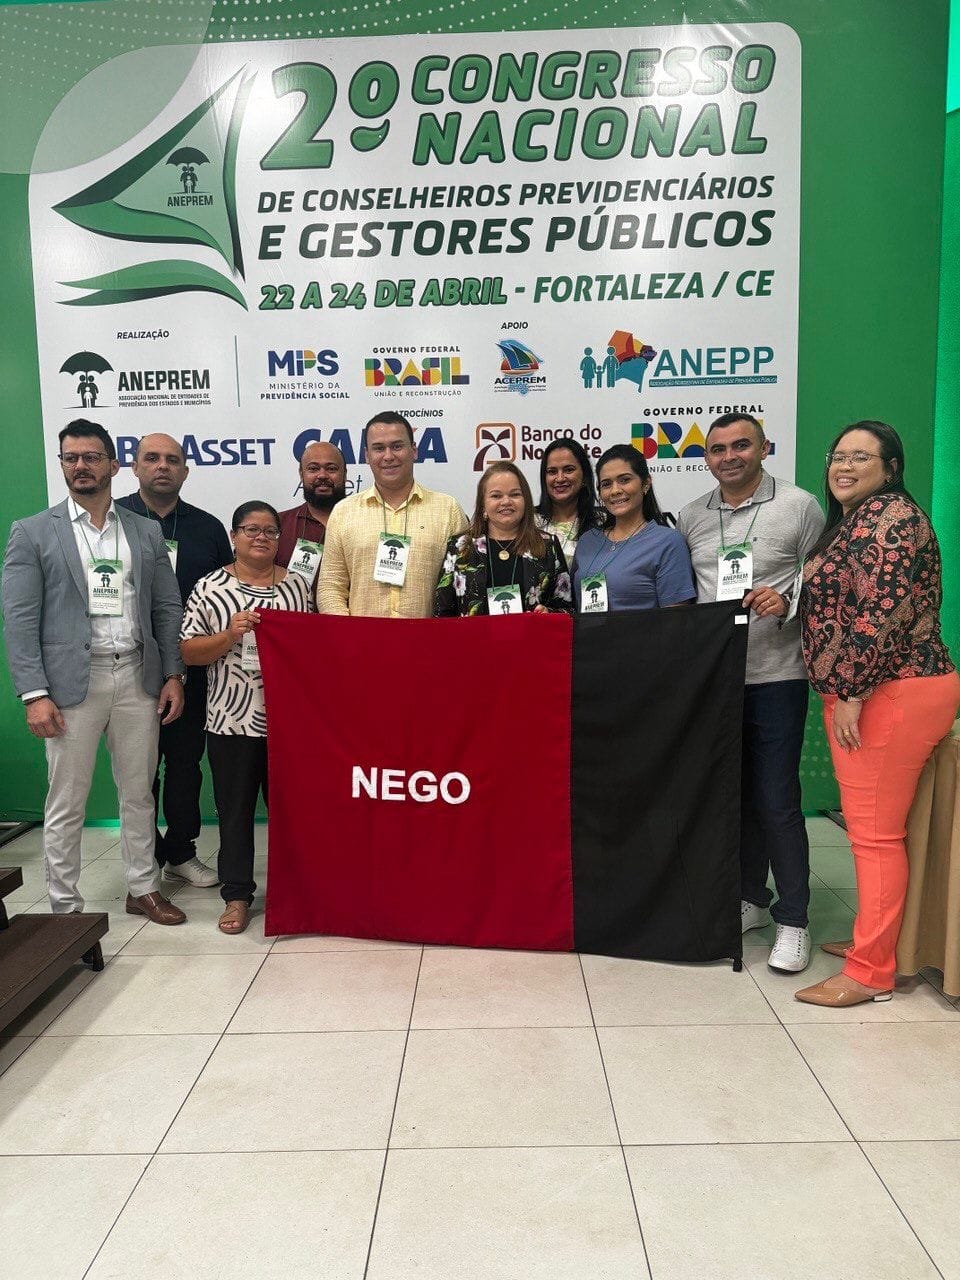 Pirpirituba participou do 2° Congresso Nacional de Conselheiros previdenciários e gestores públicos, em Fortaleza - CE.